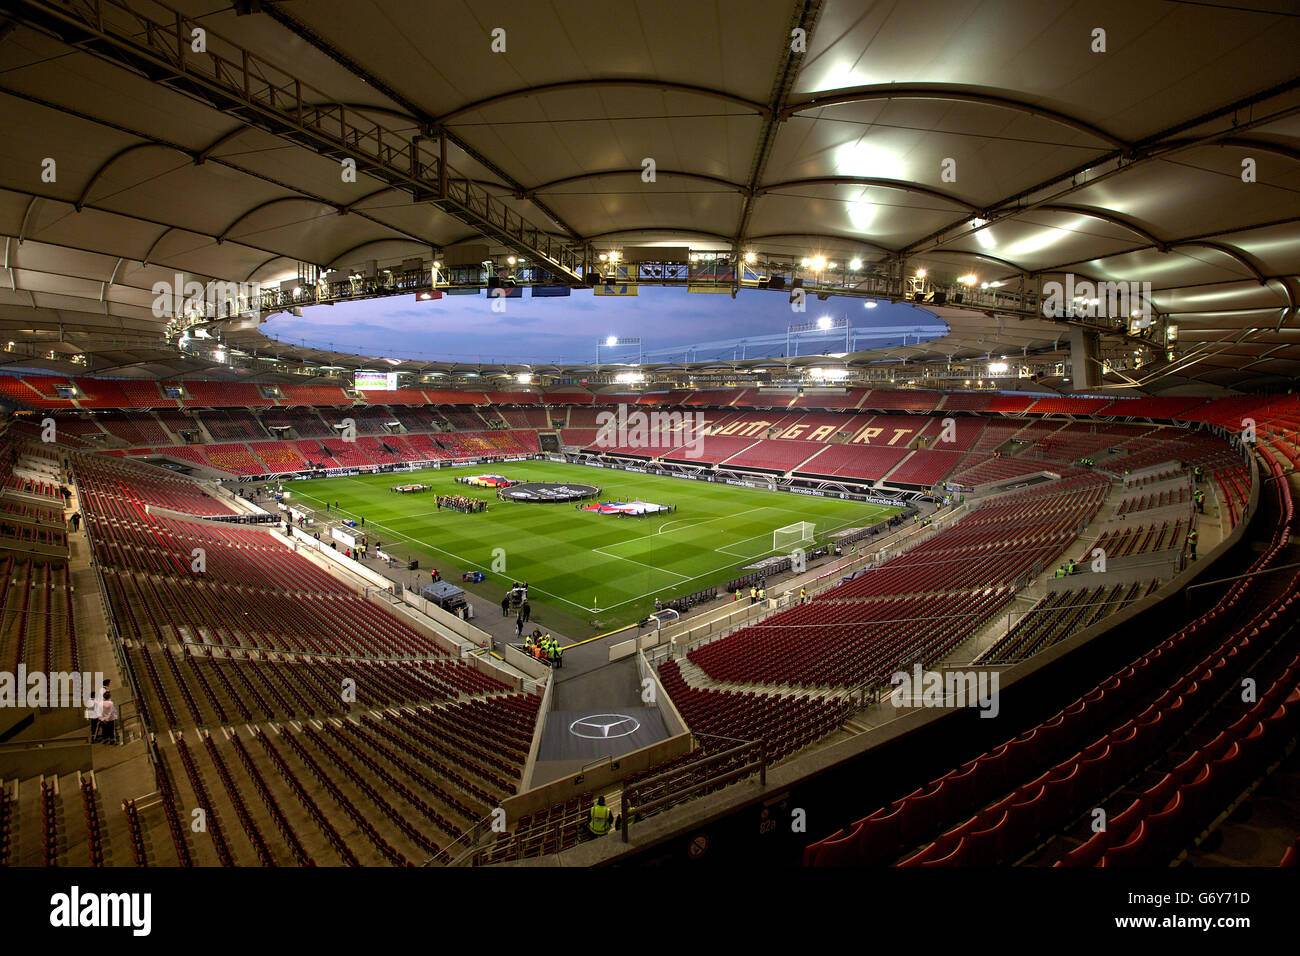 Calcio - Internazionale amichevole - Germania / Cile - Mercedes-Benz Arena. Una vista generale della Mercedes-Benz Arena Foto Stock